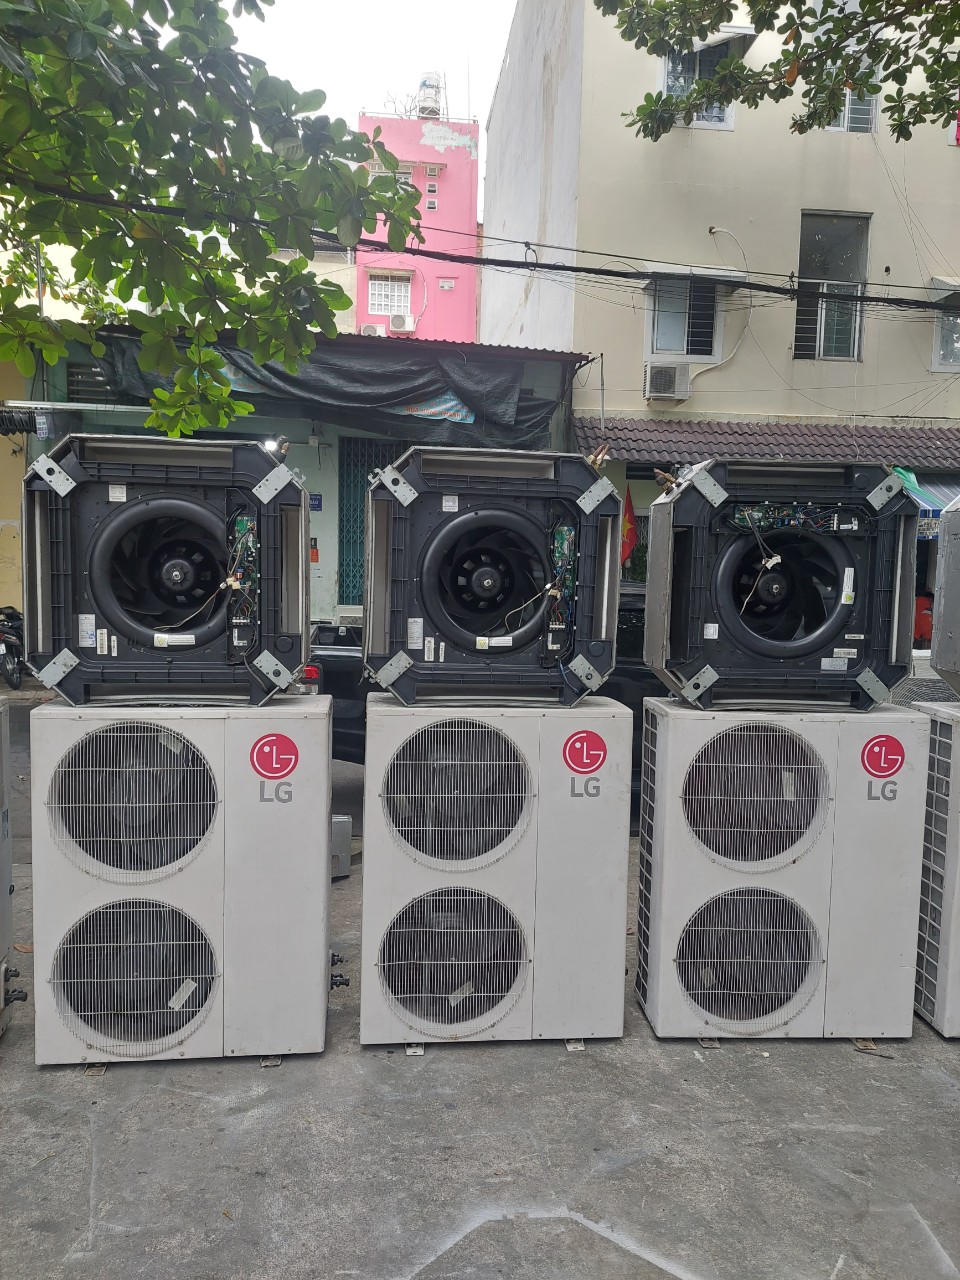 Nơi mua bán máy lạnh cũ giá cao tại quận Bình Tân  | Thu mua máy lạnh cũ bình tân 0907 243 680 Mr Bảo